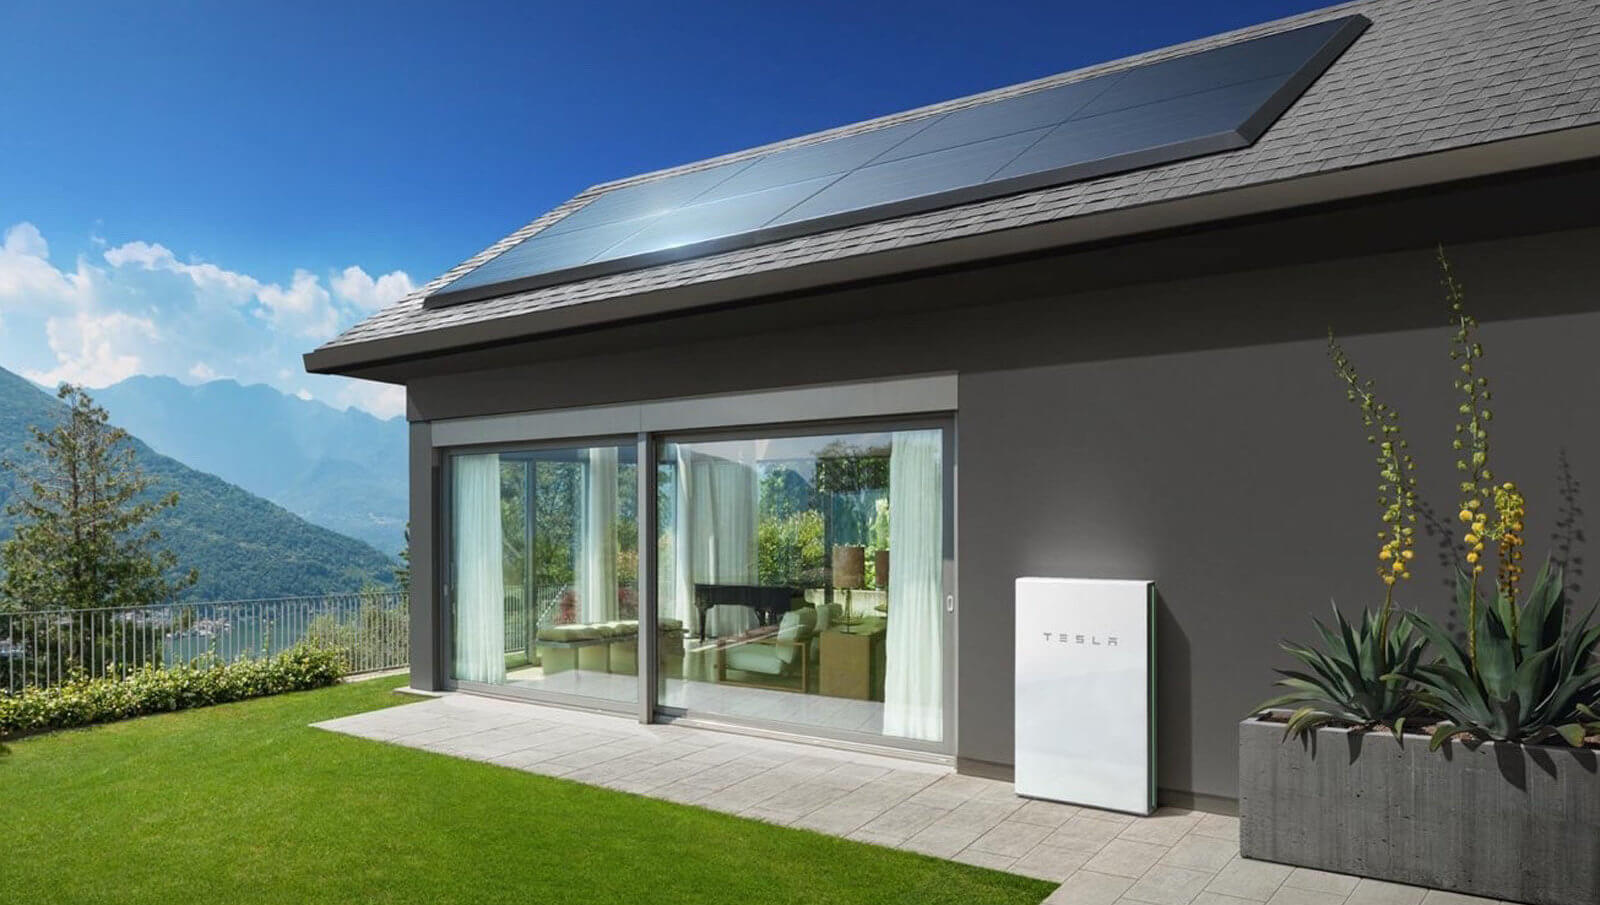 太阳能电池板斯拉可以租金为每月50美元. 但没有那么顺利